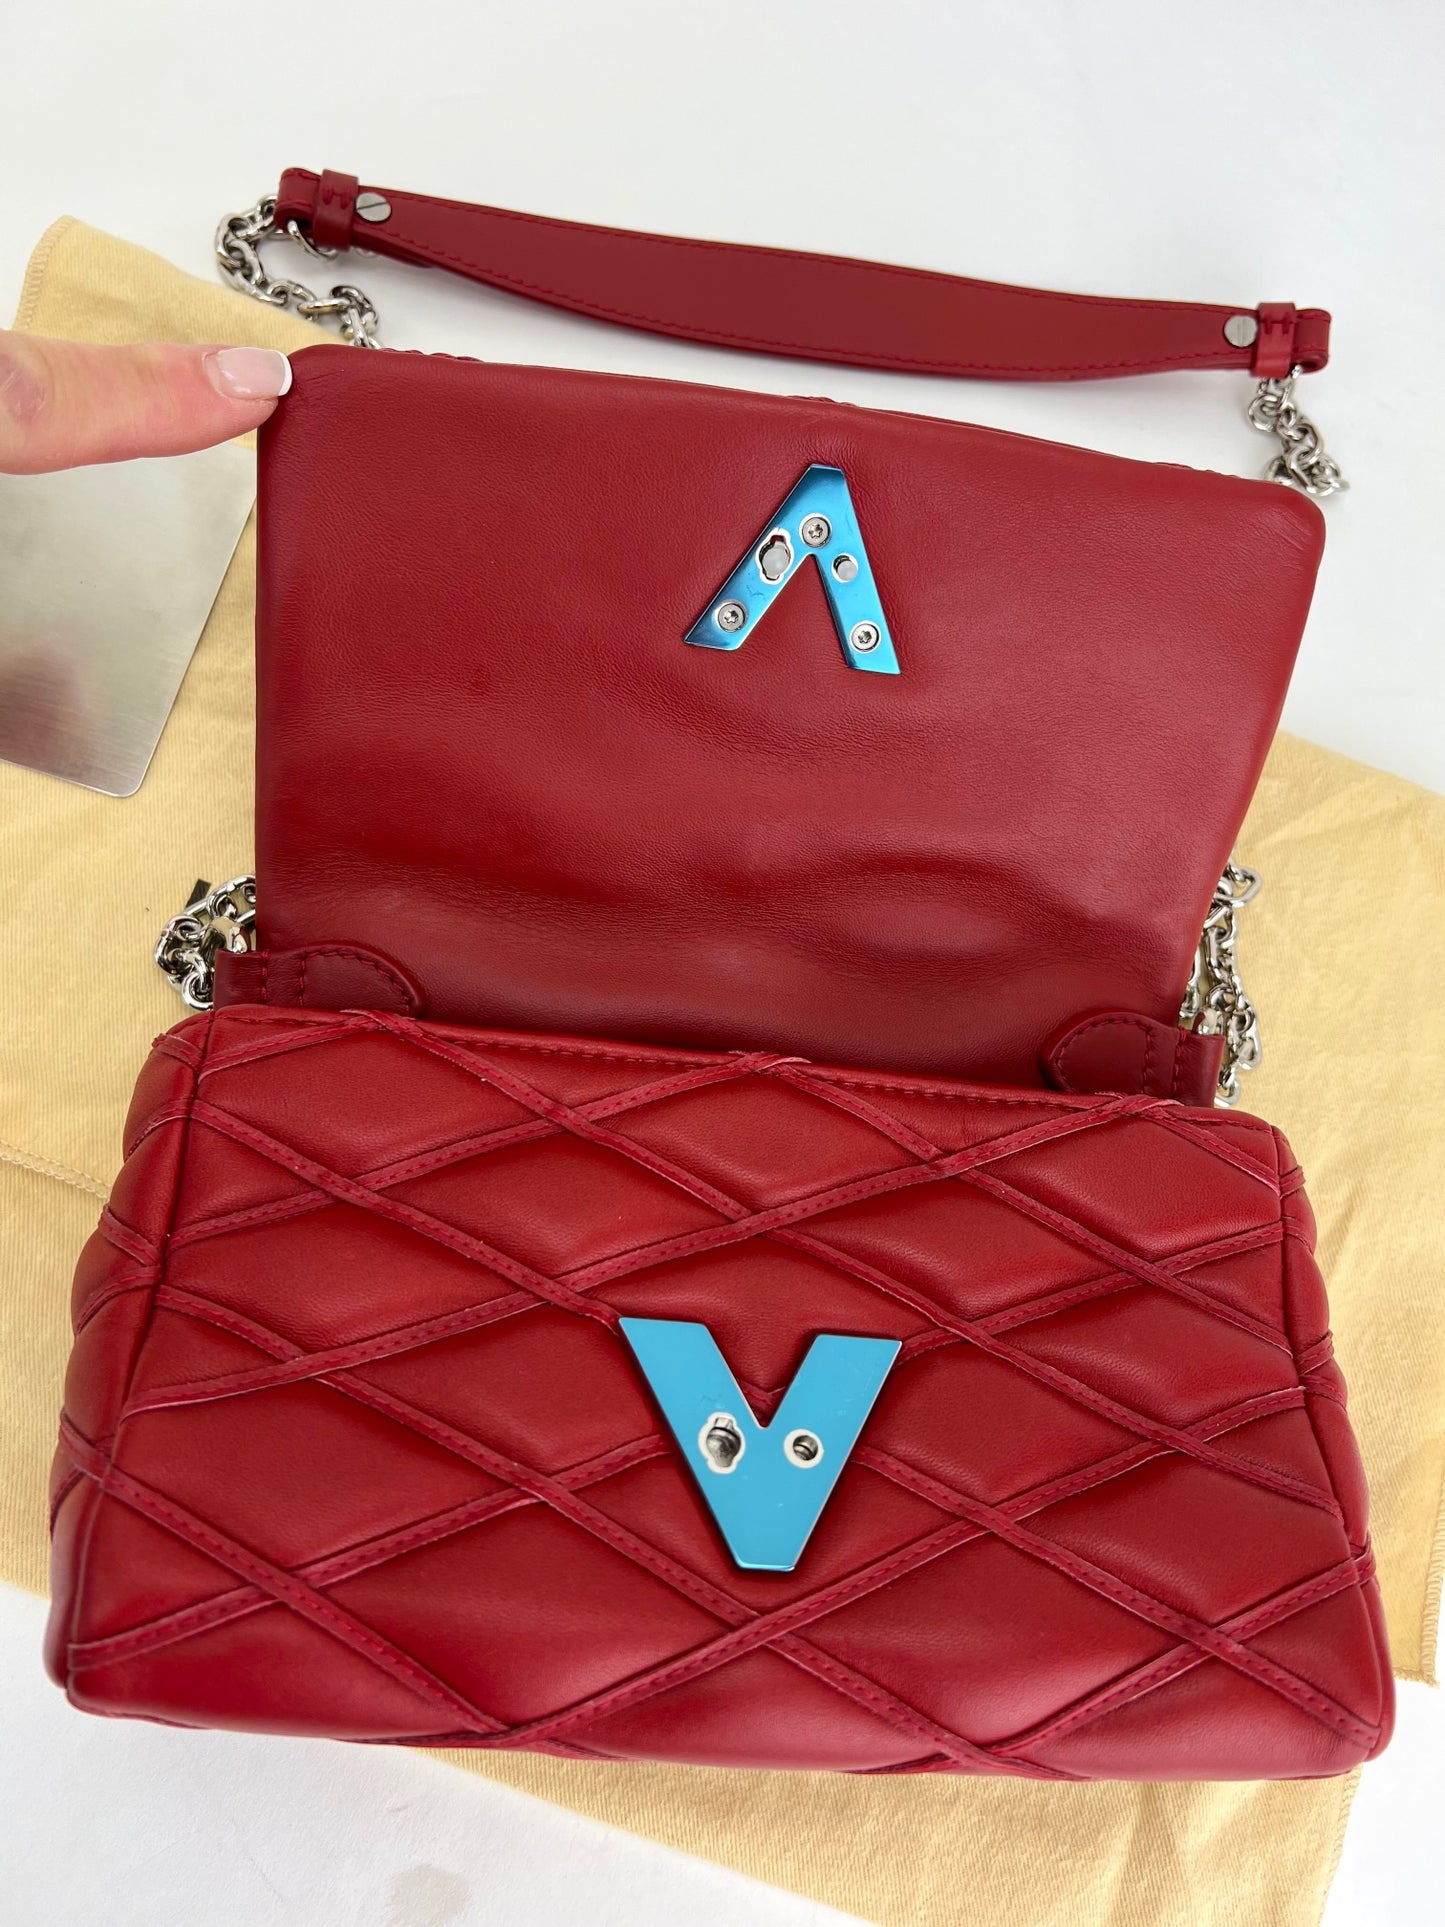 Louis Vuitton Handbag Go-14 Mini Chain Shoulder Bag Red Lambskin A916  Auction